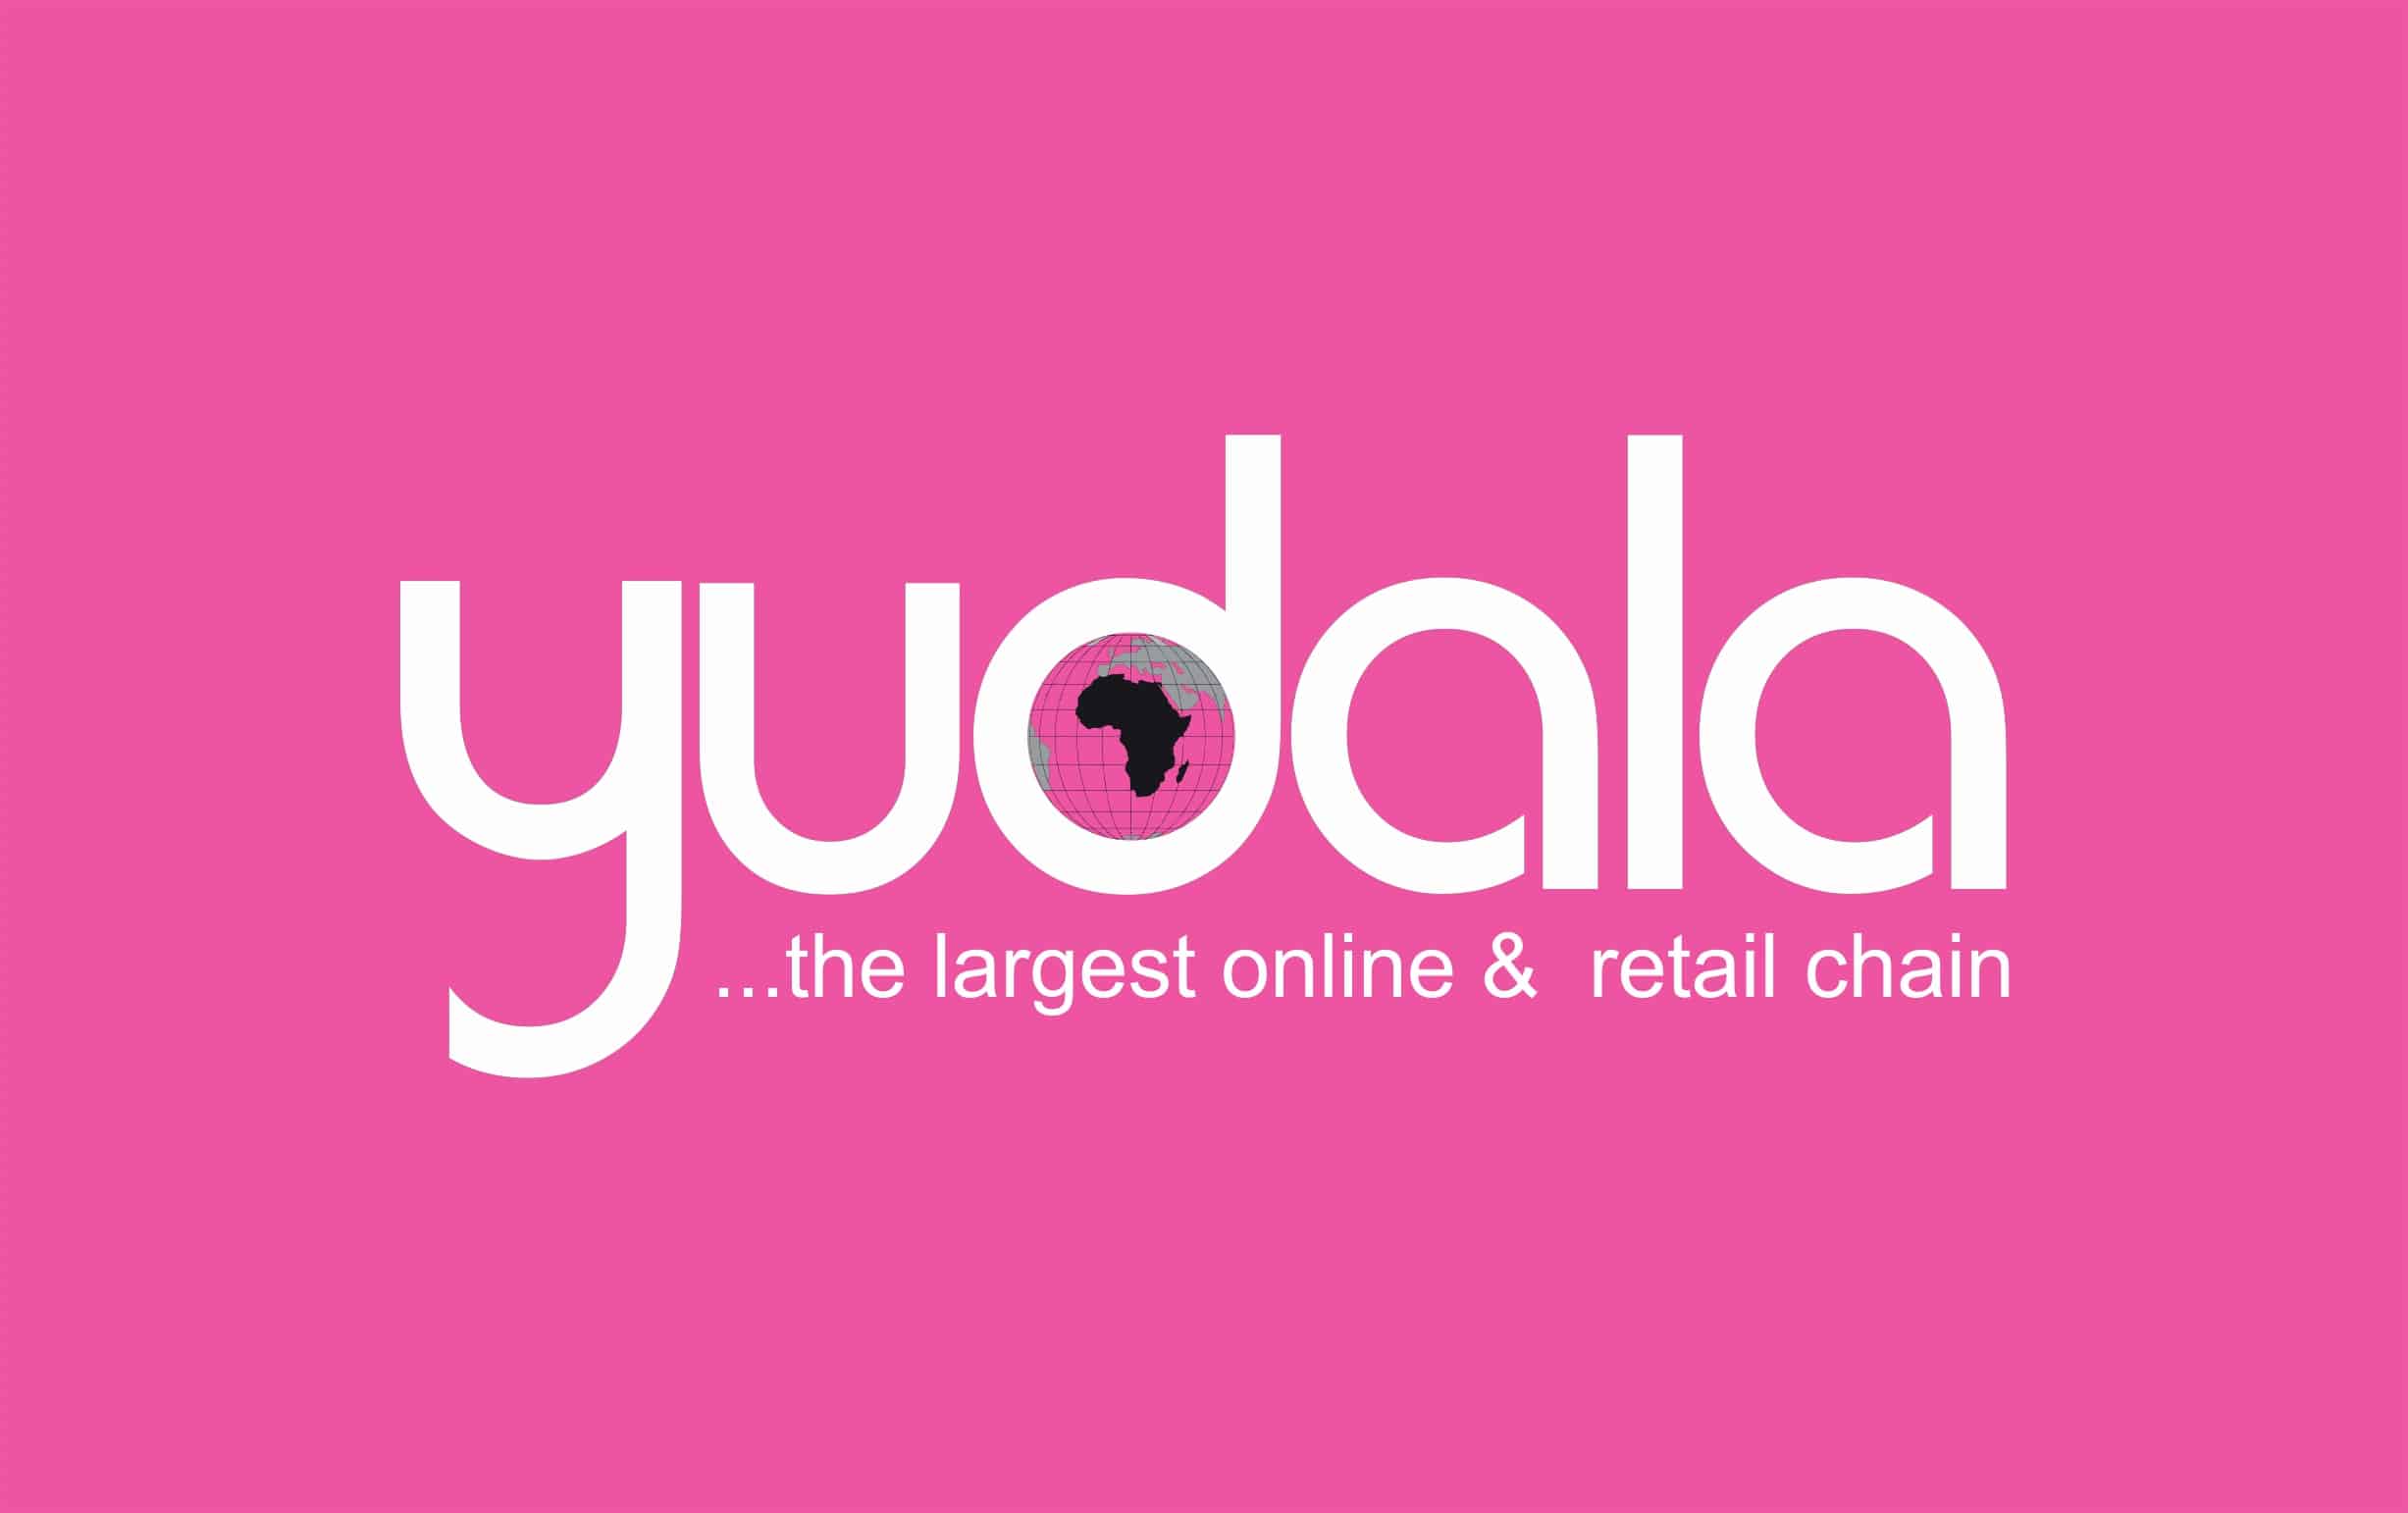 Yudala Debuts Offline Stores